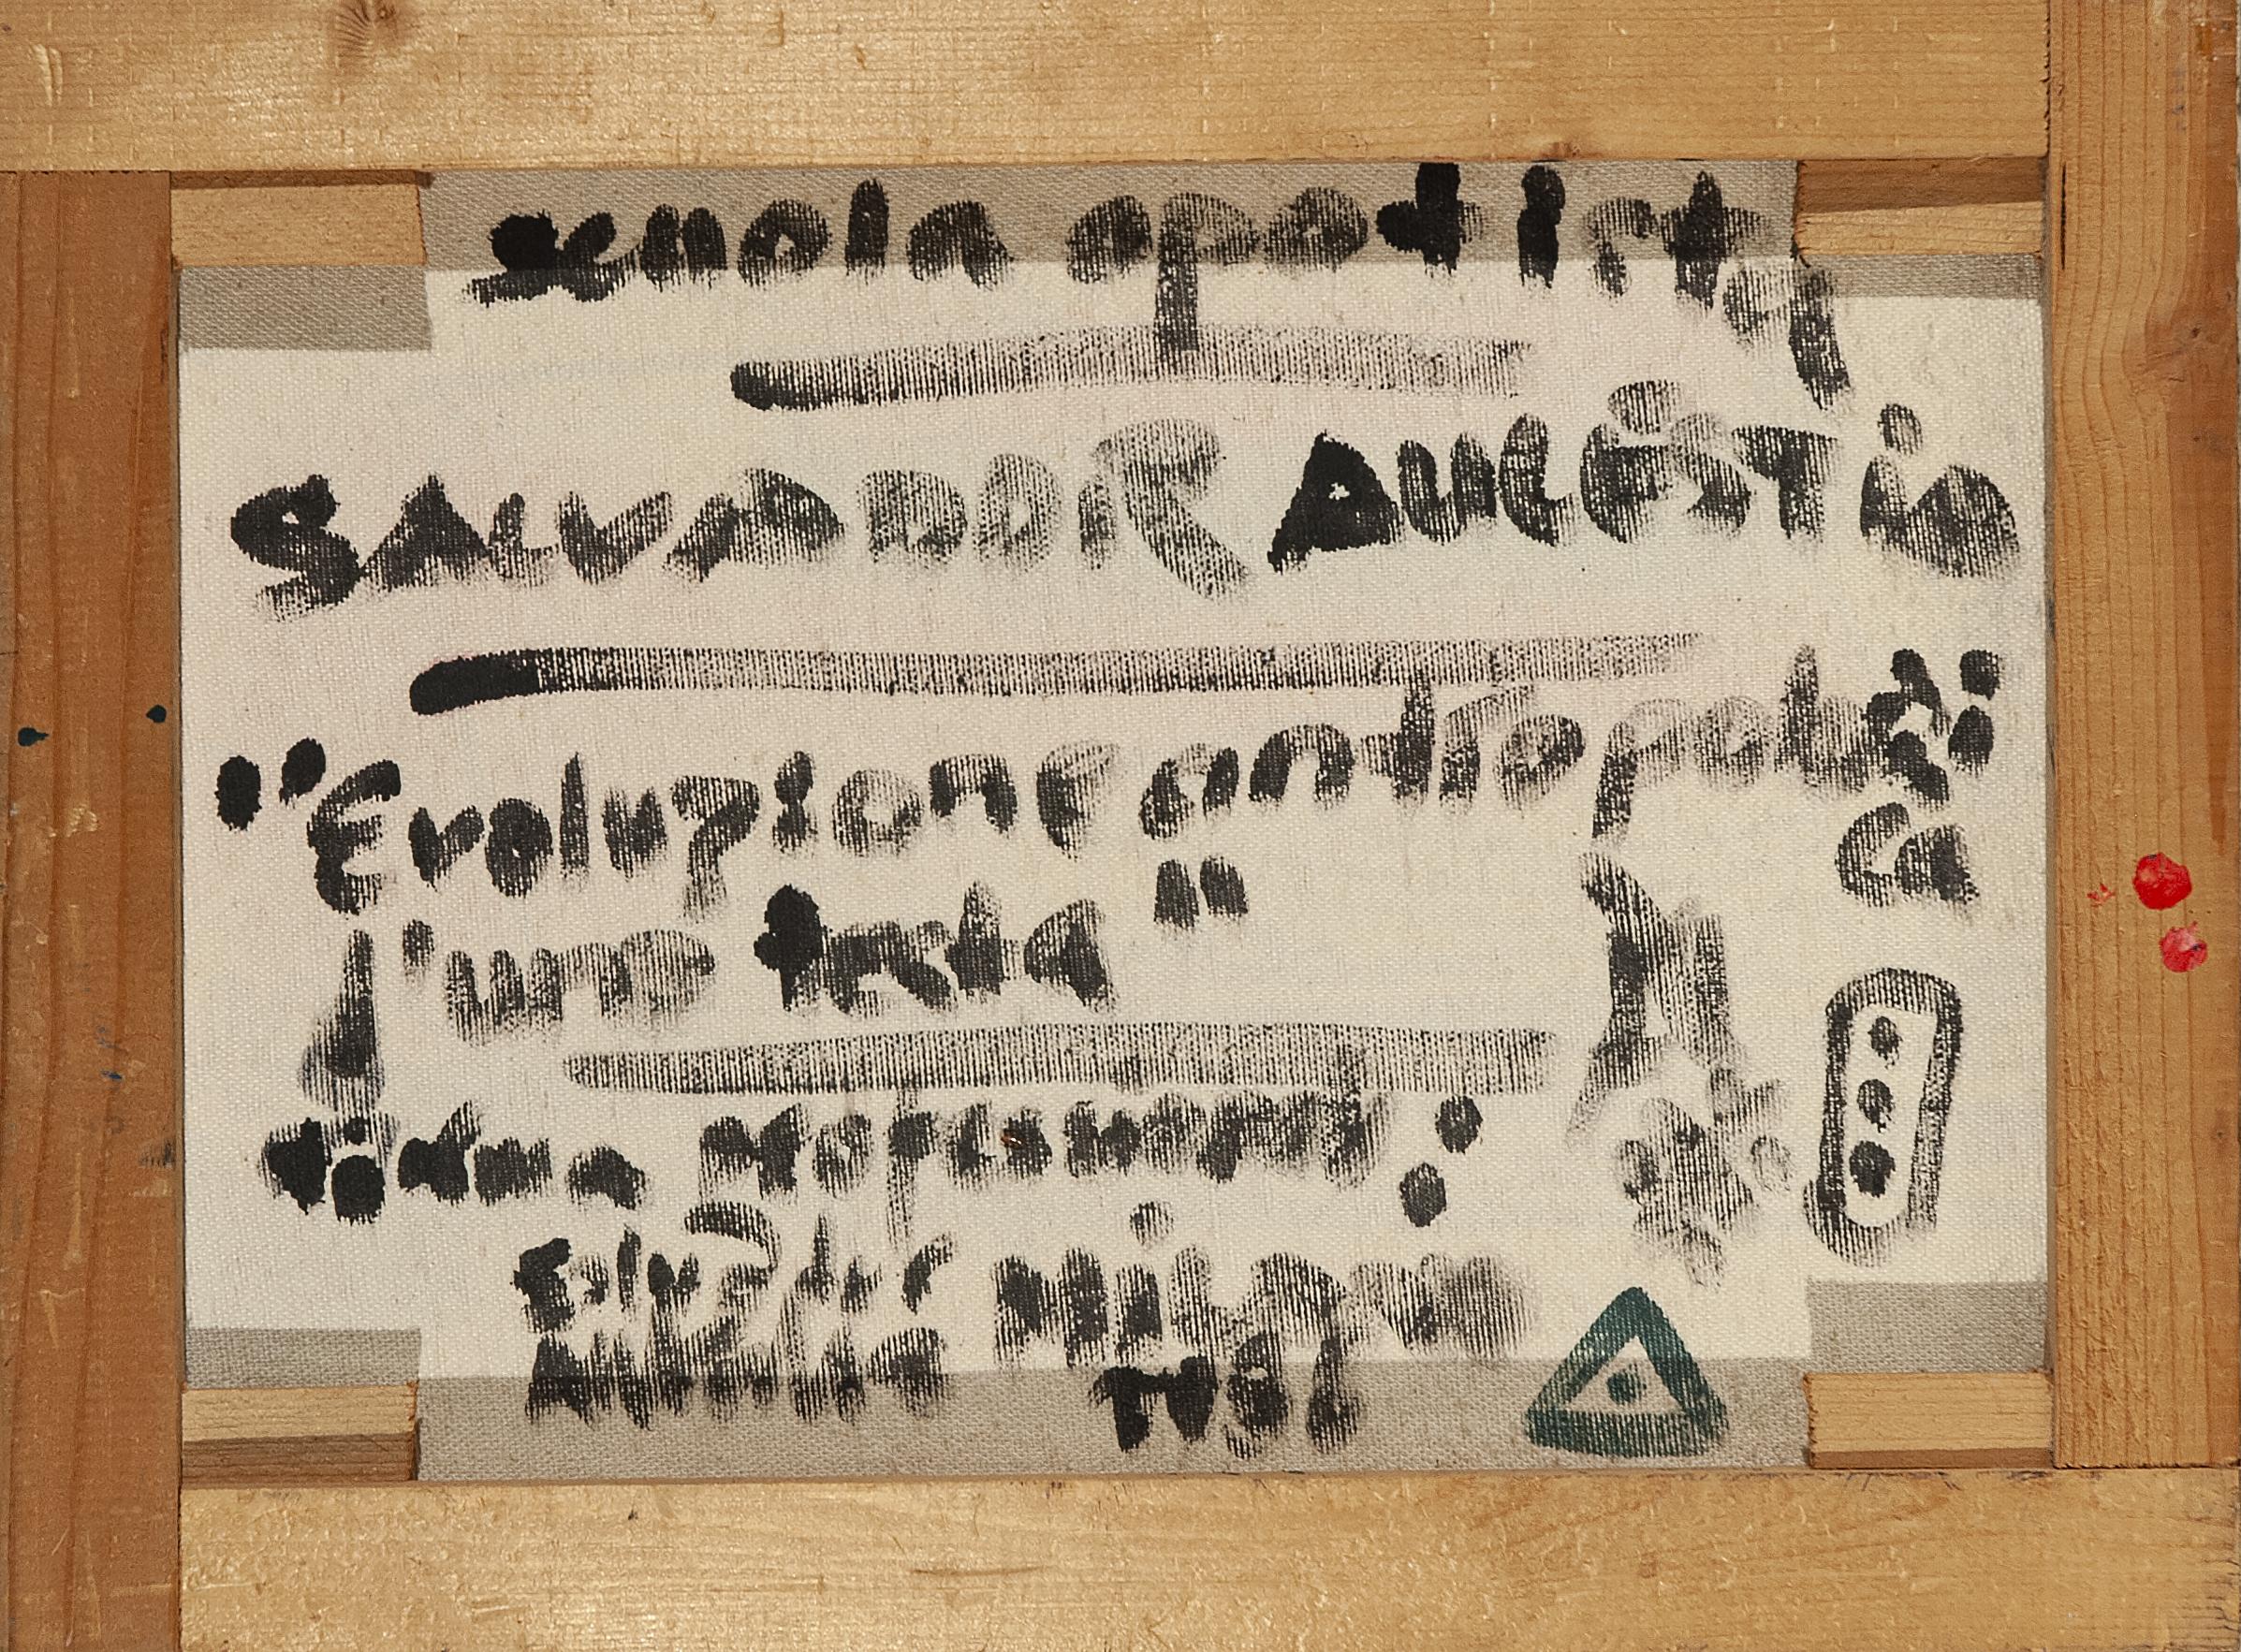 « Évoluzione antropologica di una testa » (évolution anthropologique d'une tête) - Painting de Salvador Aulestia